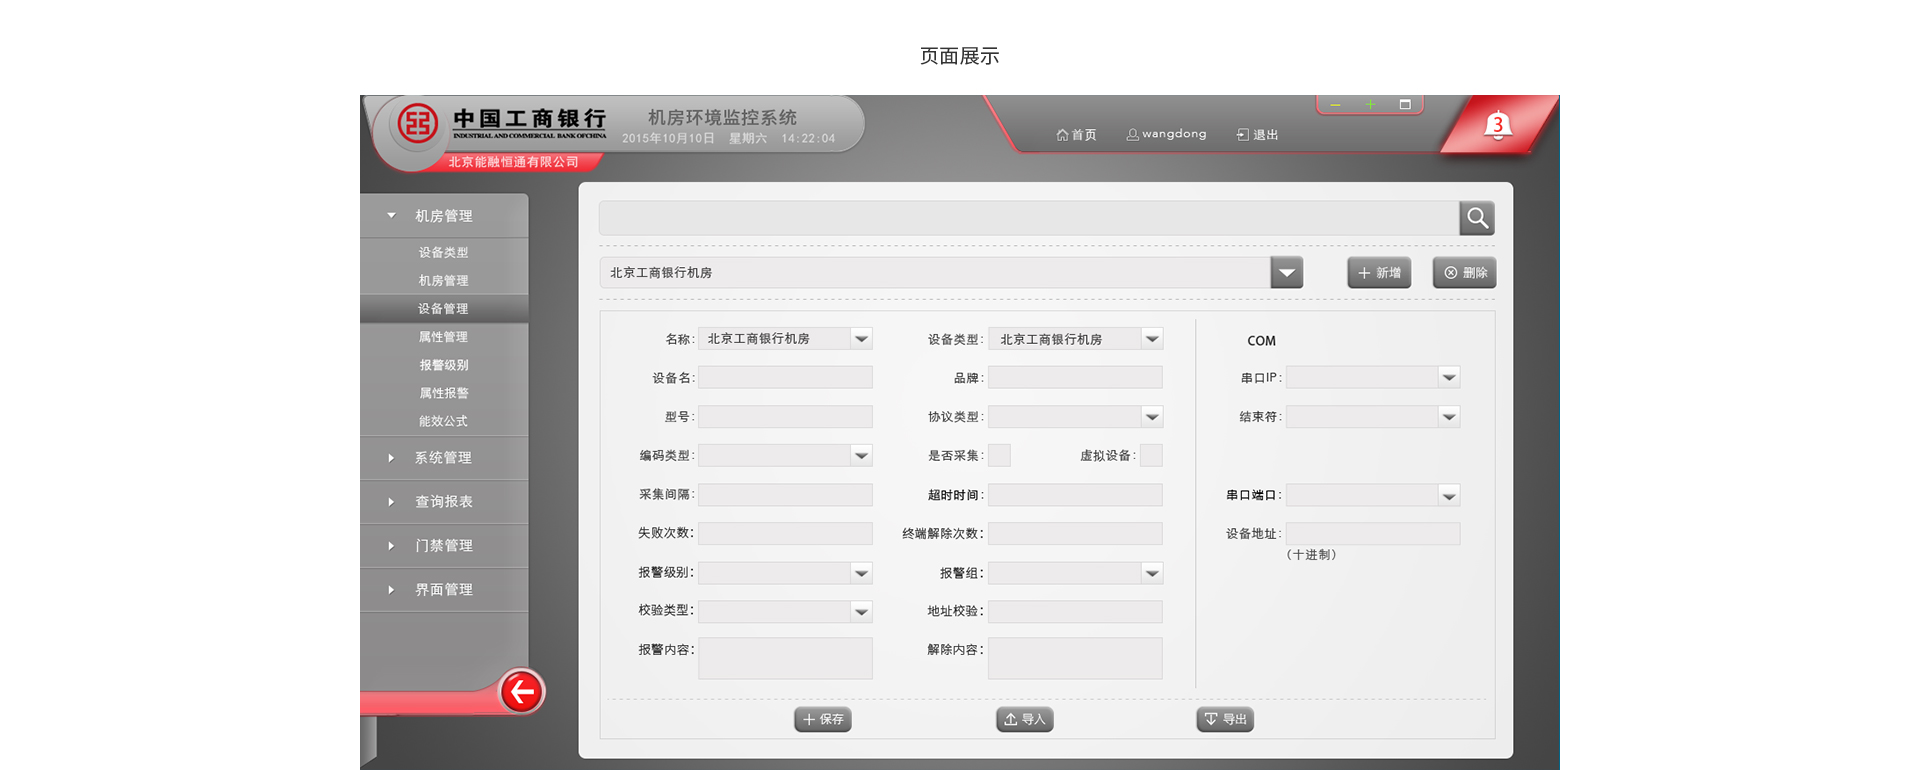 中国工商银行机房环境监测系统